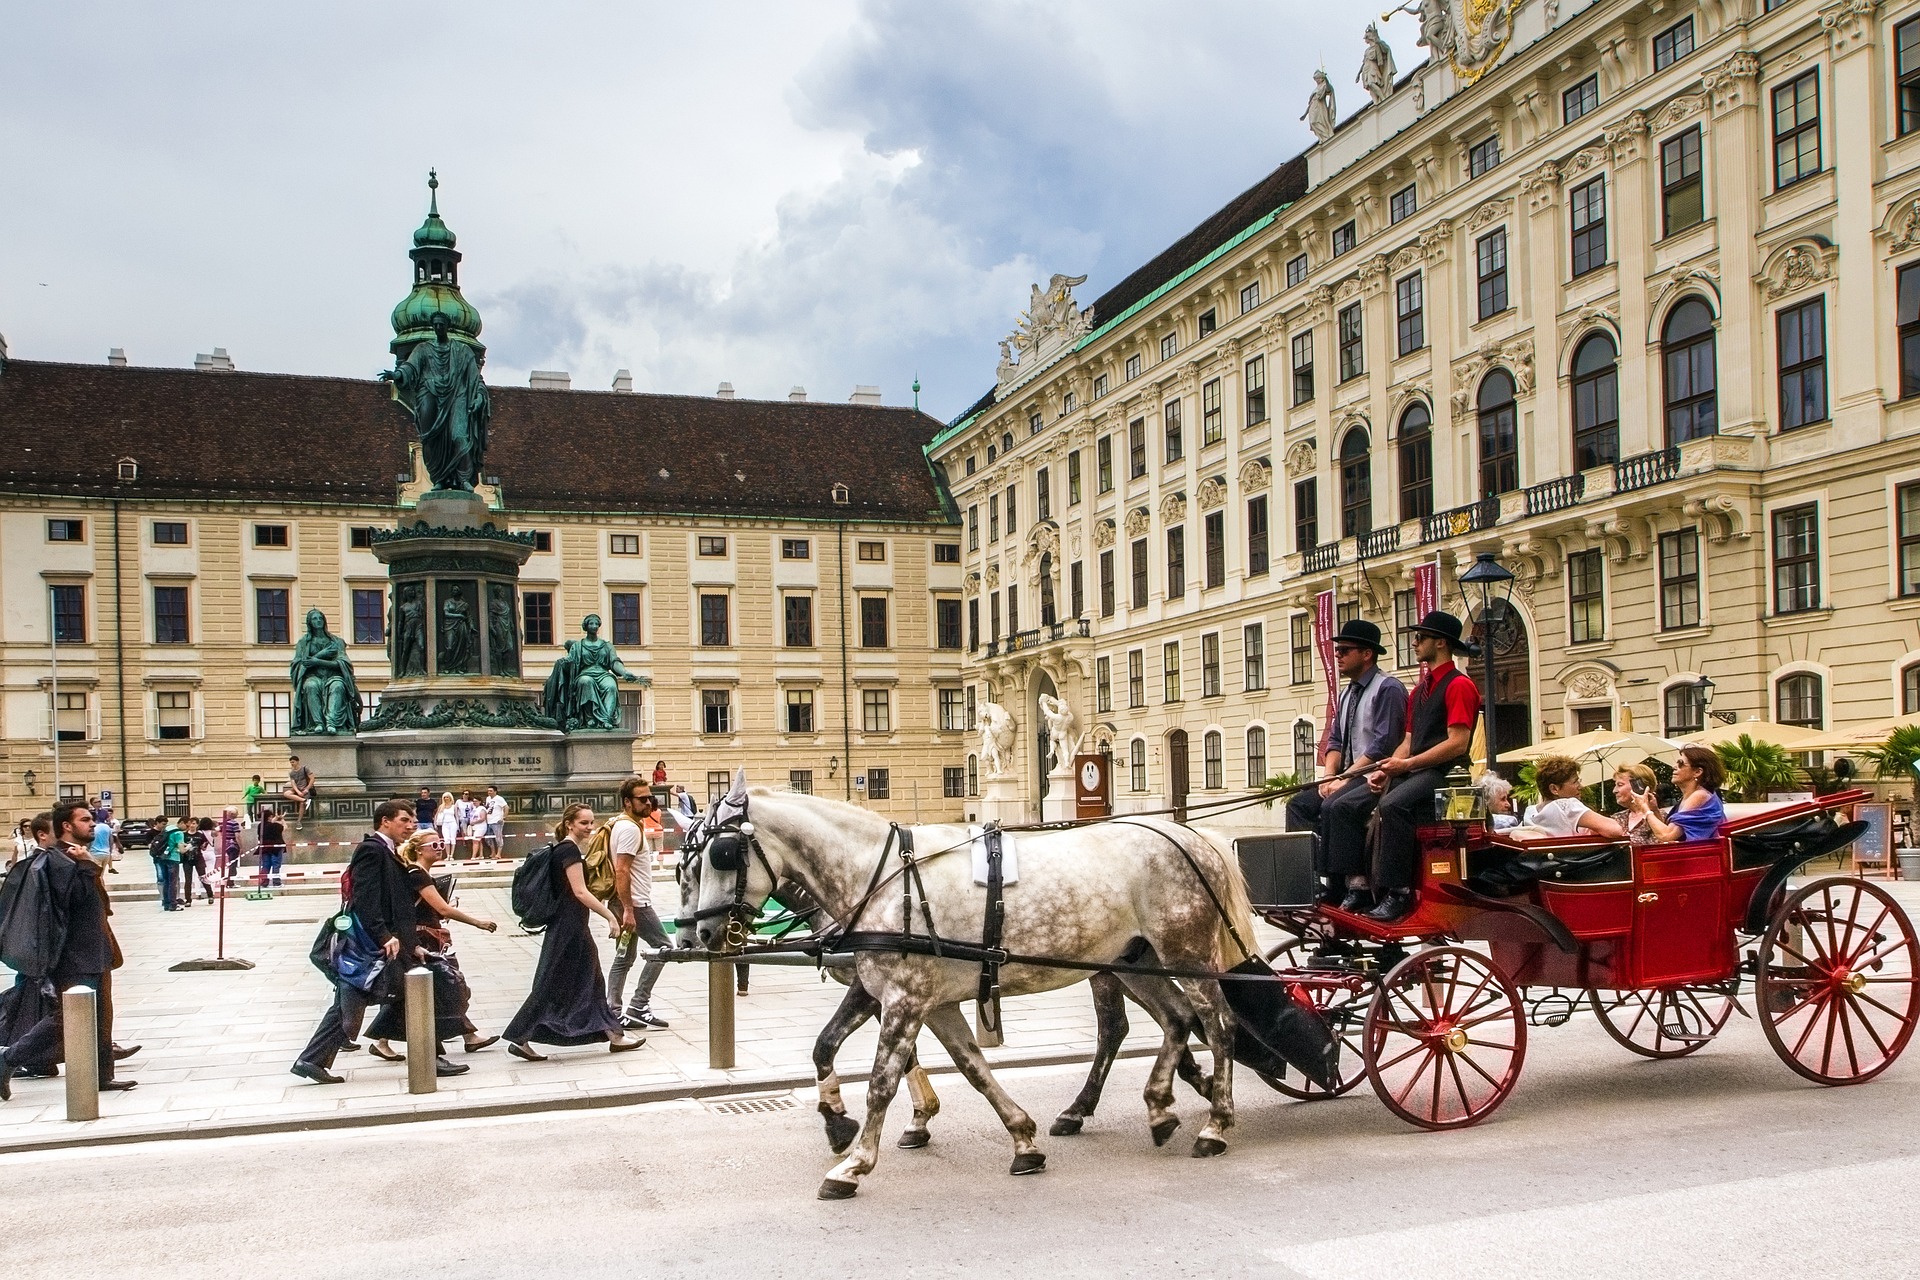 Wie leben Minderheiten in großen Metropolen? Slawische Minderheiten treffen sich in Wien